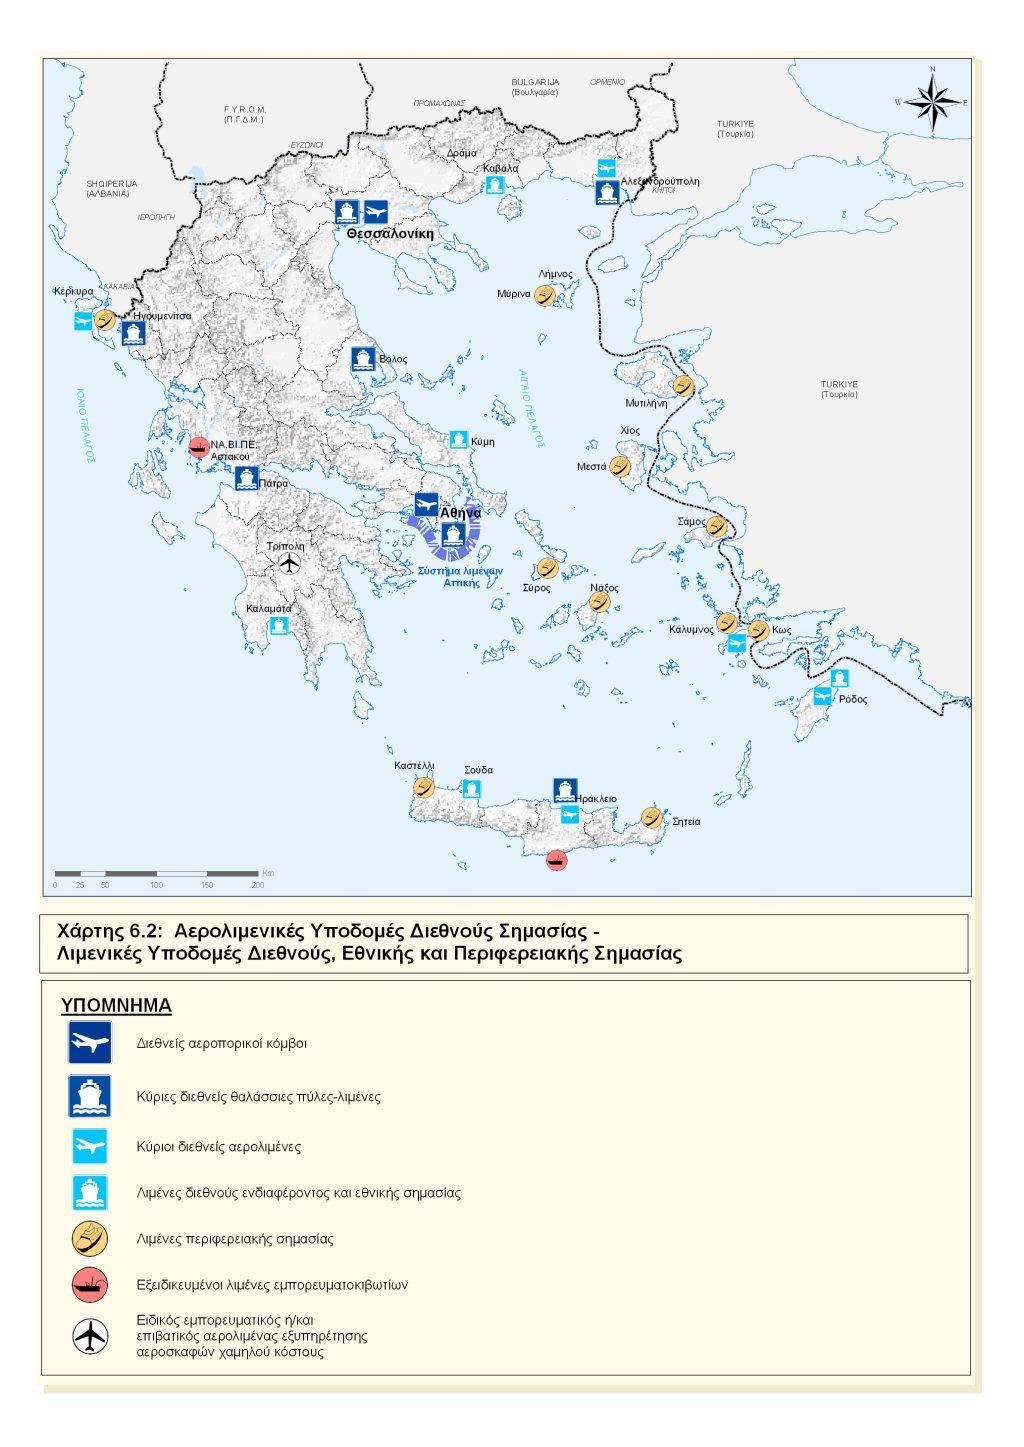 Αερολιμενικές Υποδομές στην Ελλάδα 15 διεθνή αεροδρόμια 14